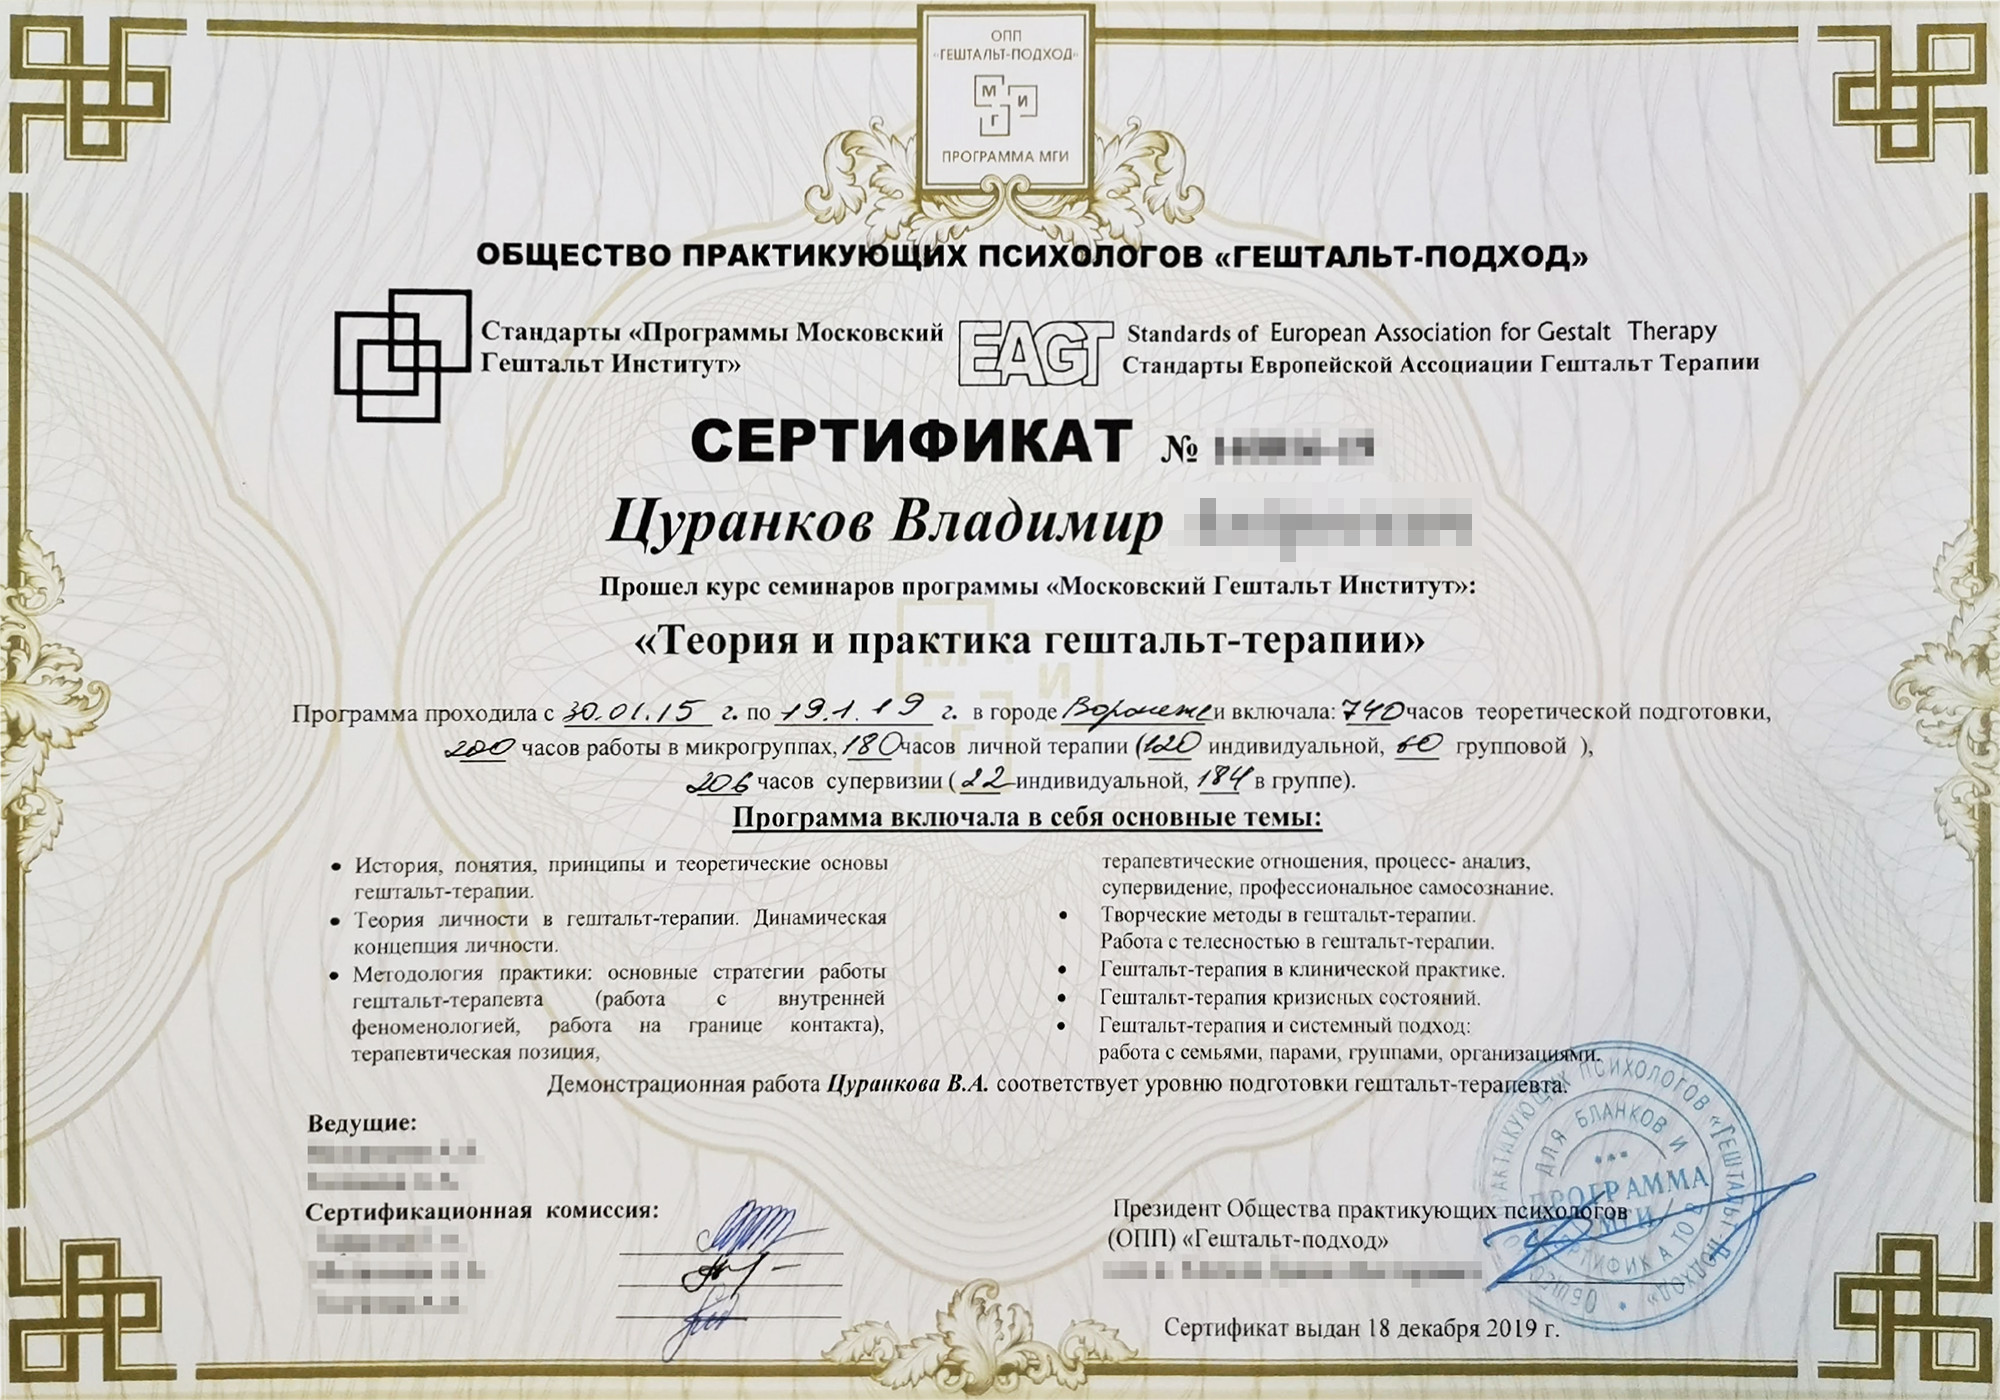 Этот сертификат я получил в 2019 году, когда закончил обучение гештальттерапии. Оно длилось 4 года